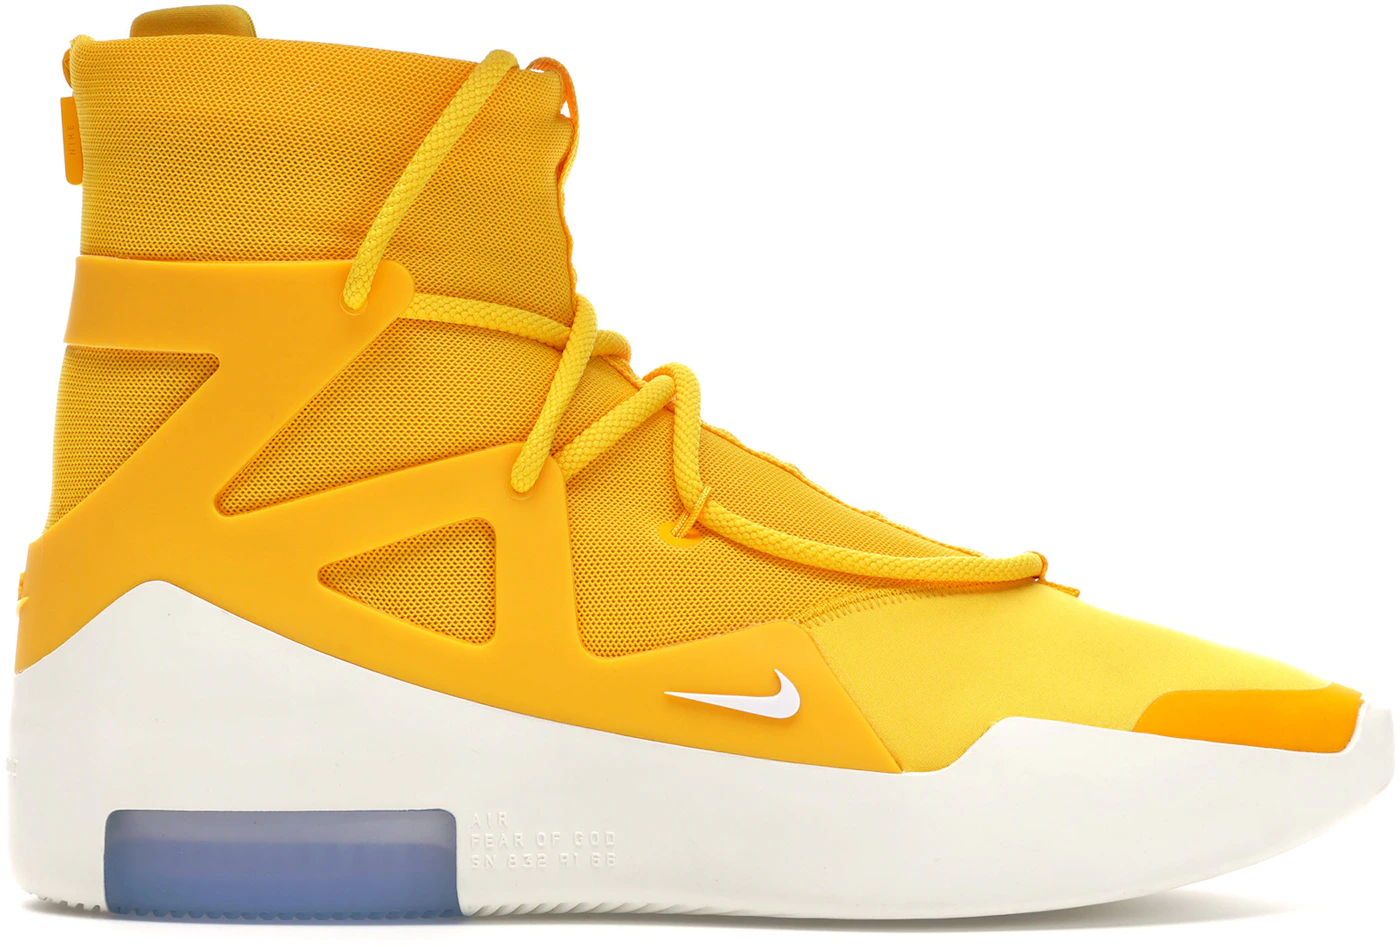 Jerry Lorenzo Rocks Nike Air Fear God 1 Sneakers In 'NBA 2K' Trailer